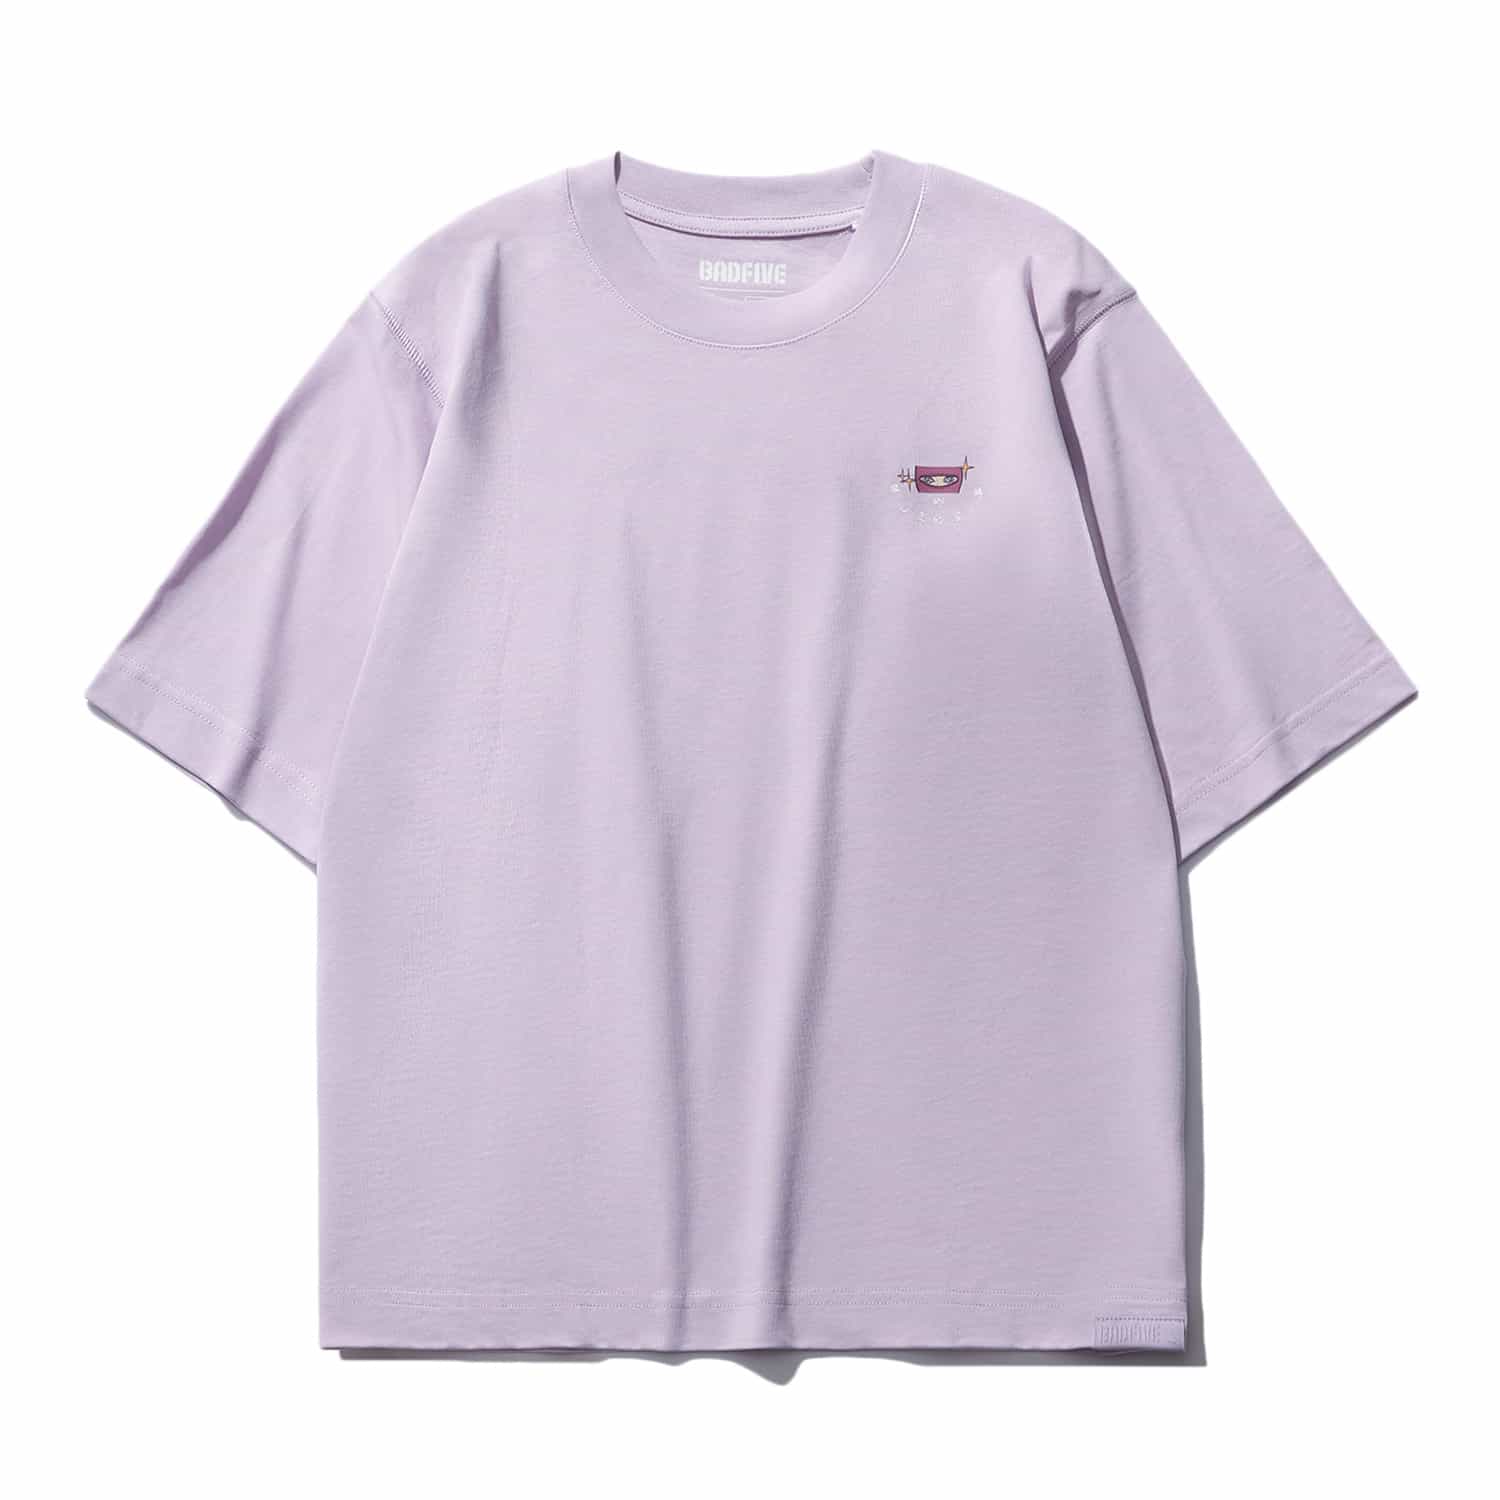 反伍籃球系列女子短袖文化衫 - 月光紫